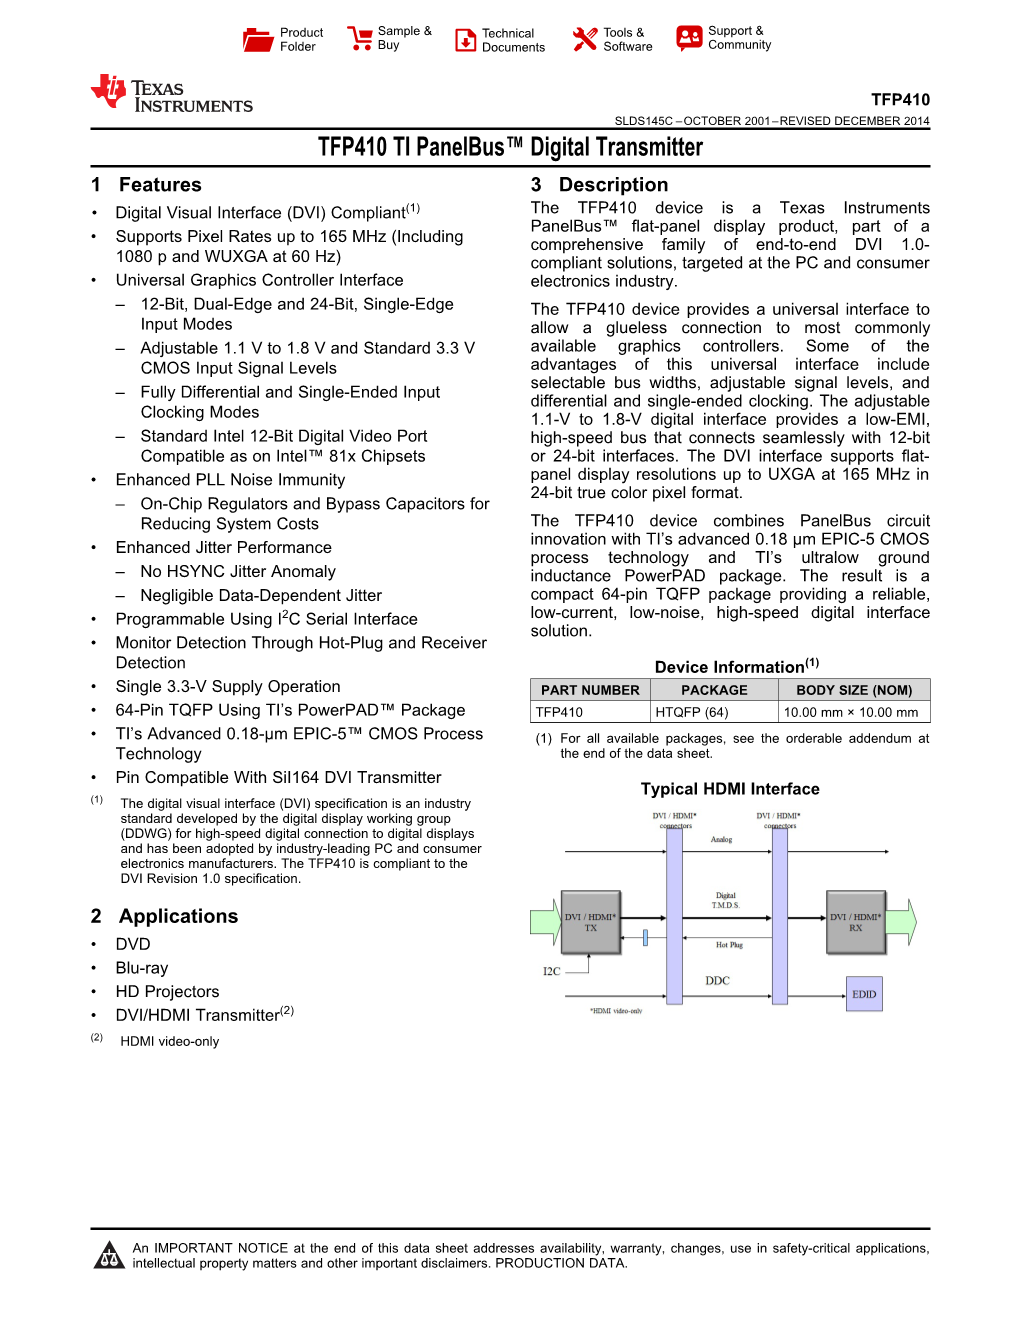 TFP410 TI Panelbus™ Digital Transmitter Datasheet (Rev. C)